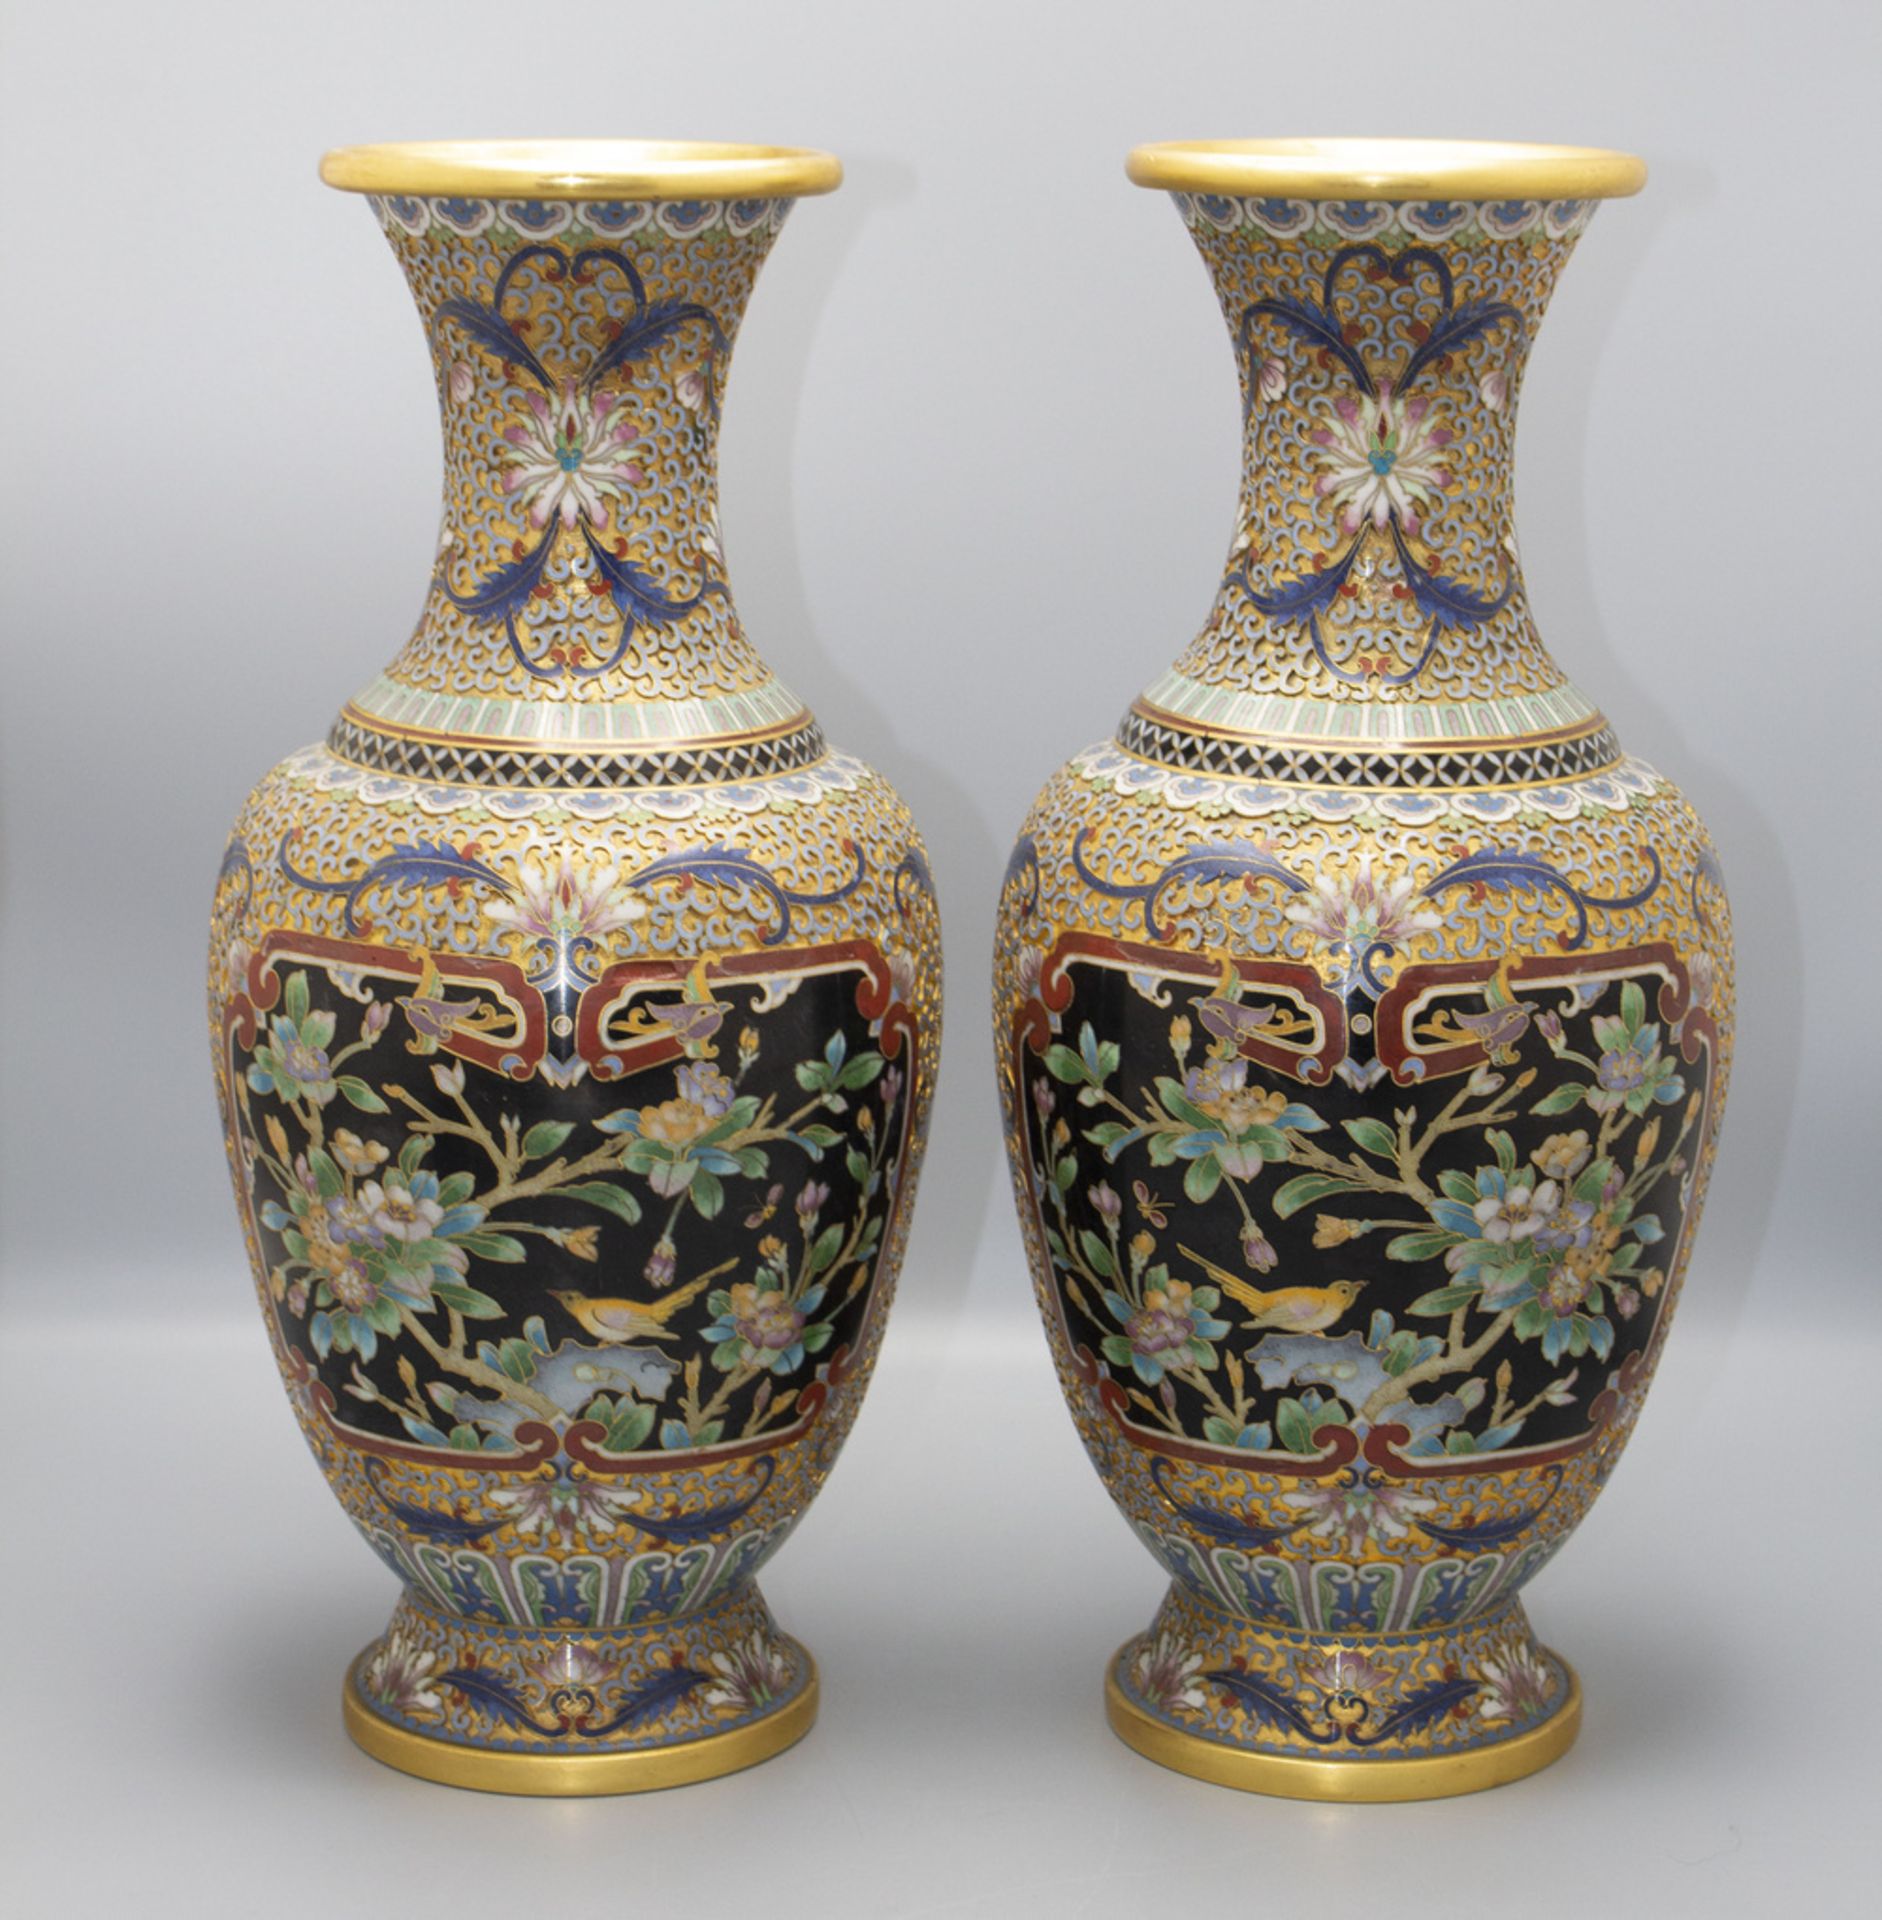 Paar Cloisonne-Vasen / A pair of Cloisonné vases, China, um 1900 - Bild 3 aus 5